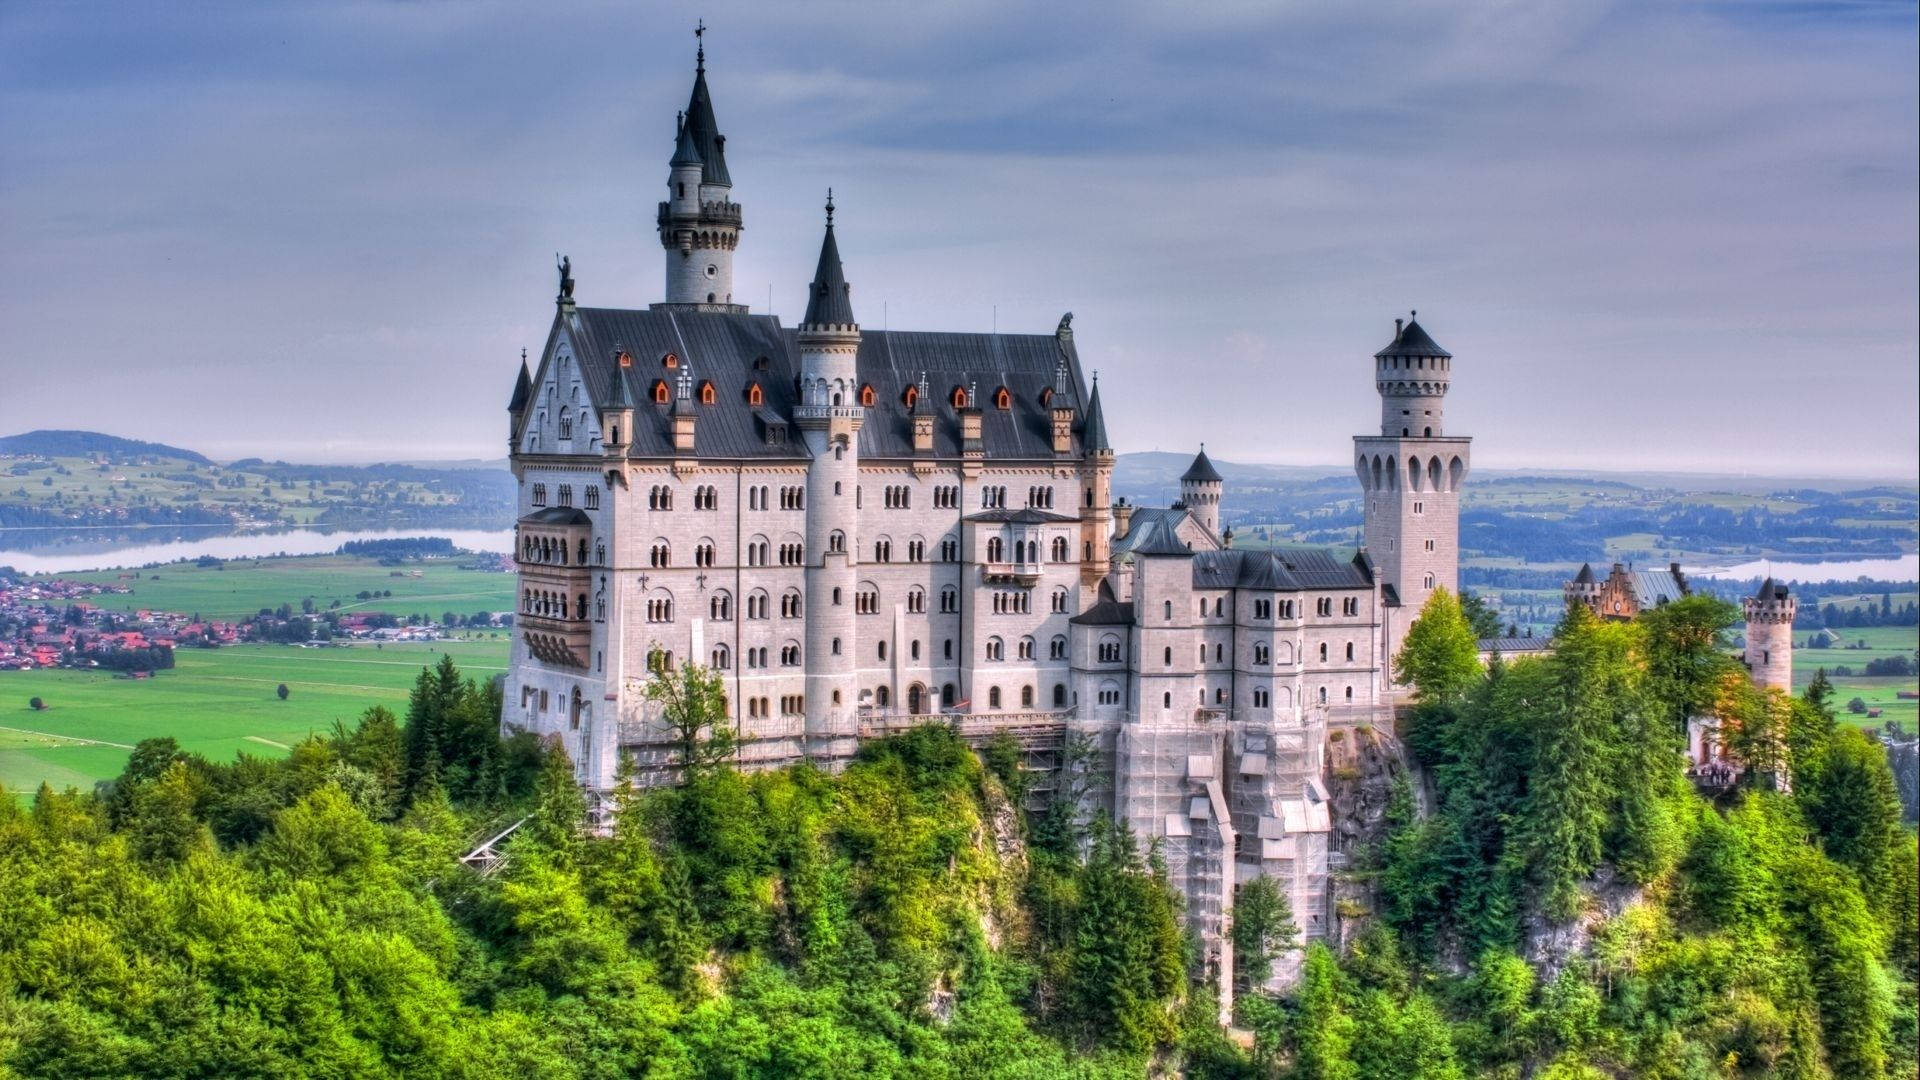 Fairy Tale Neuschwanstein Castle in Germany Wallpaper